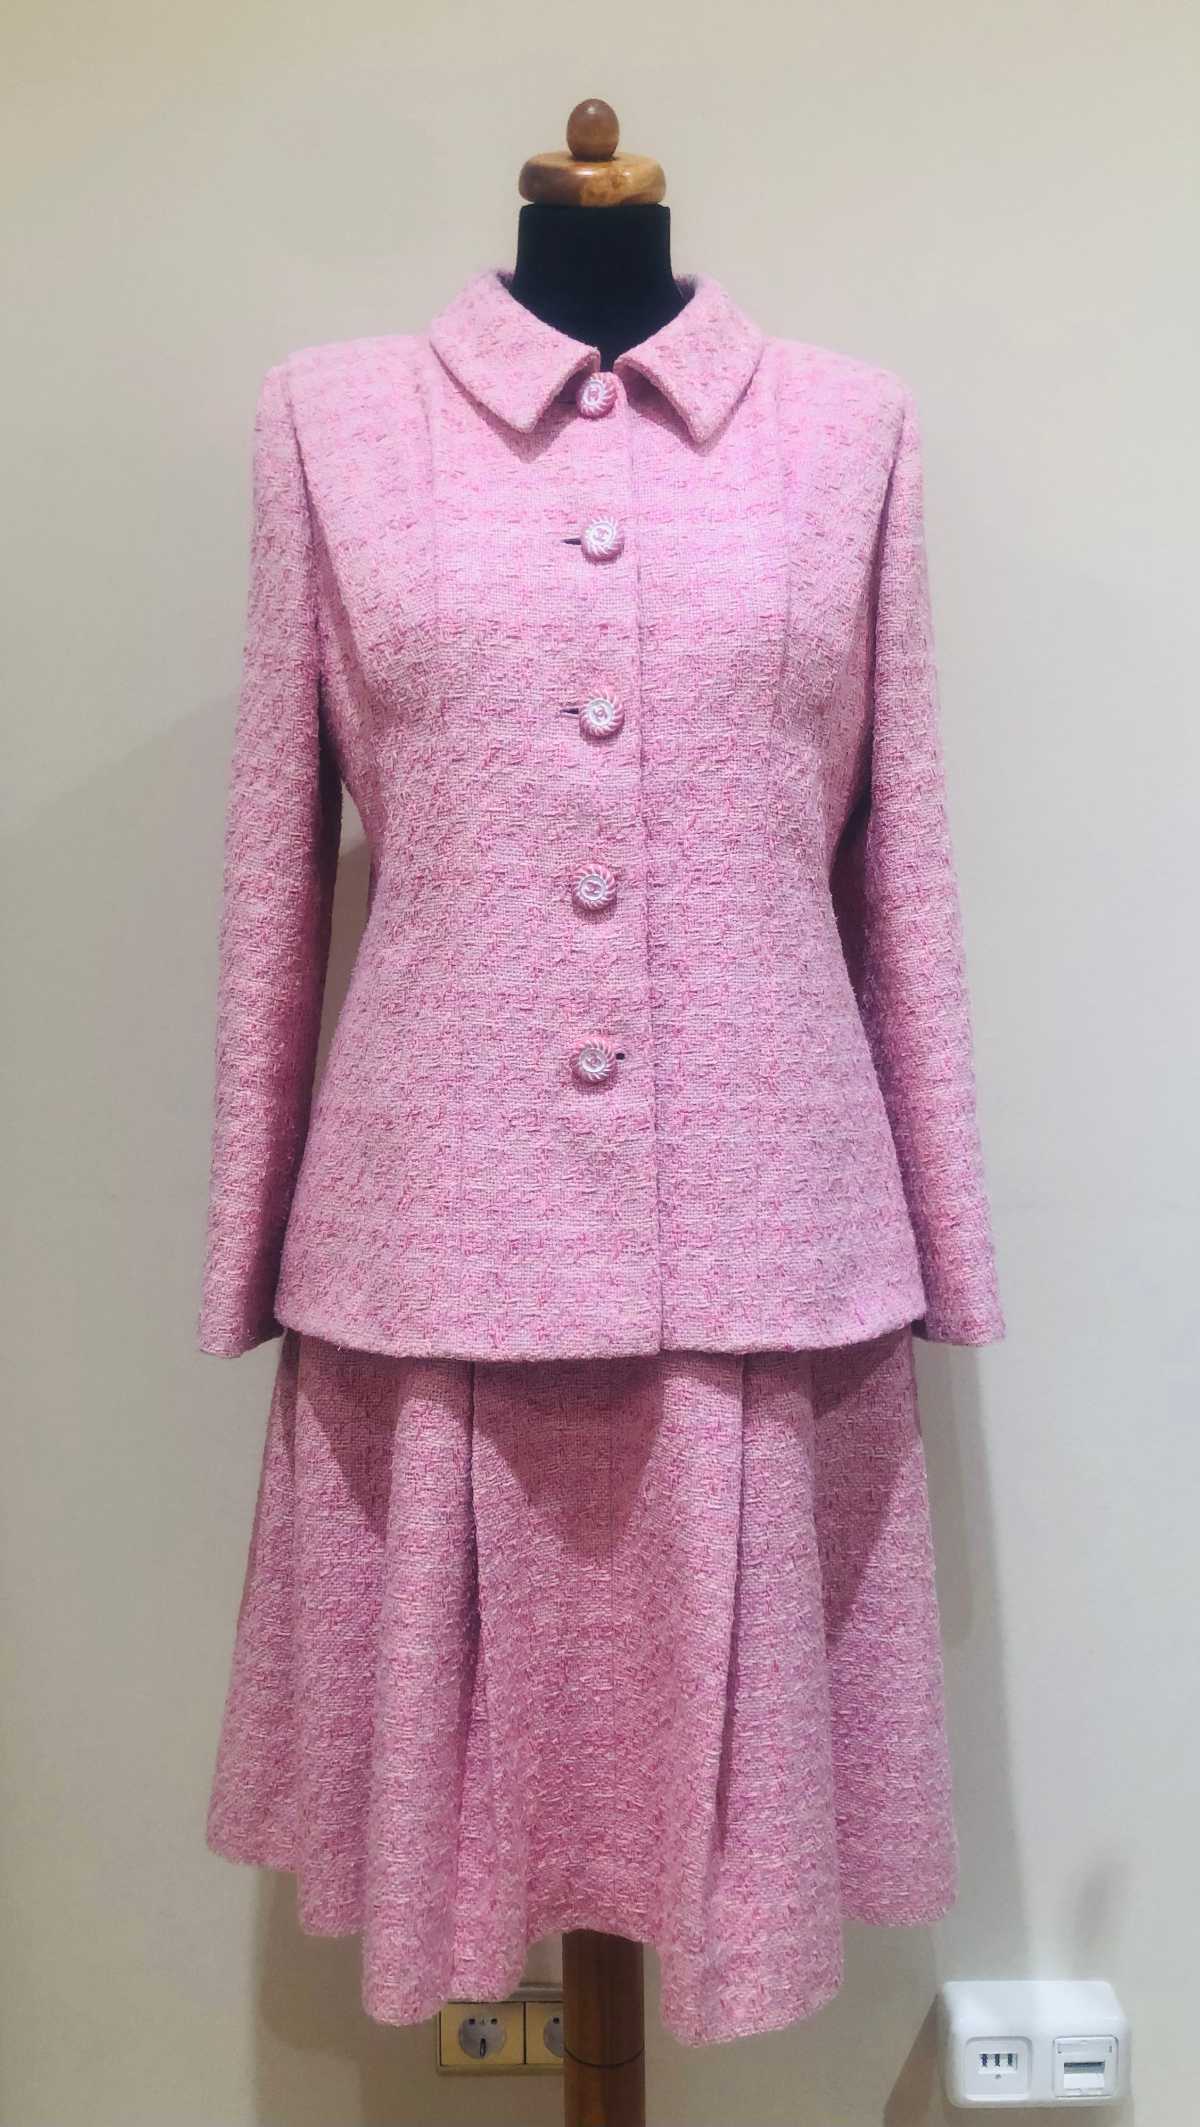 Chanel Kostüm, in rosé, aus Tweed, in Größe 38, frontalansicht.